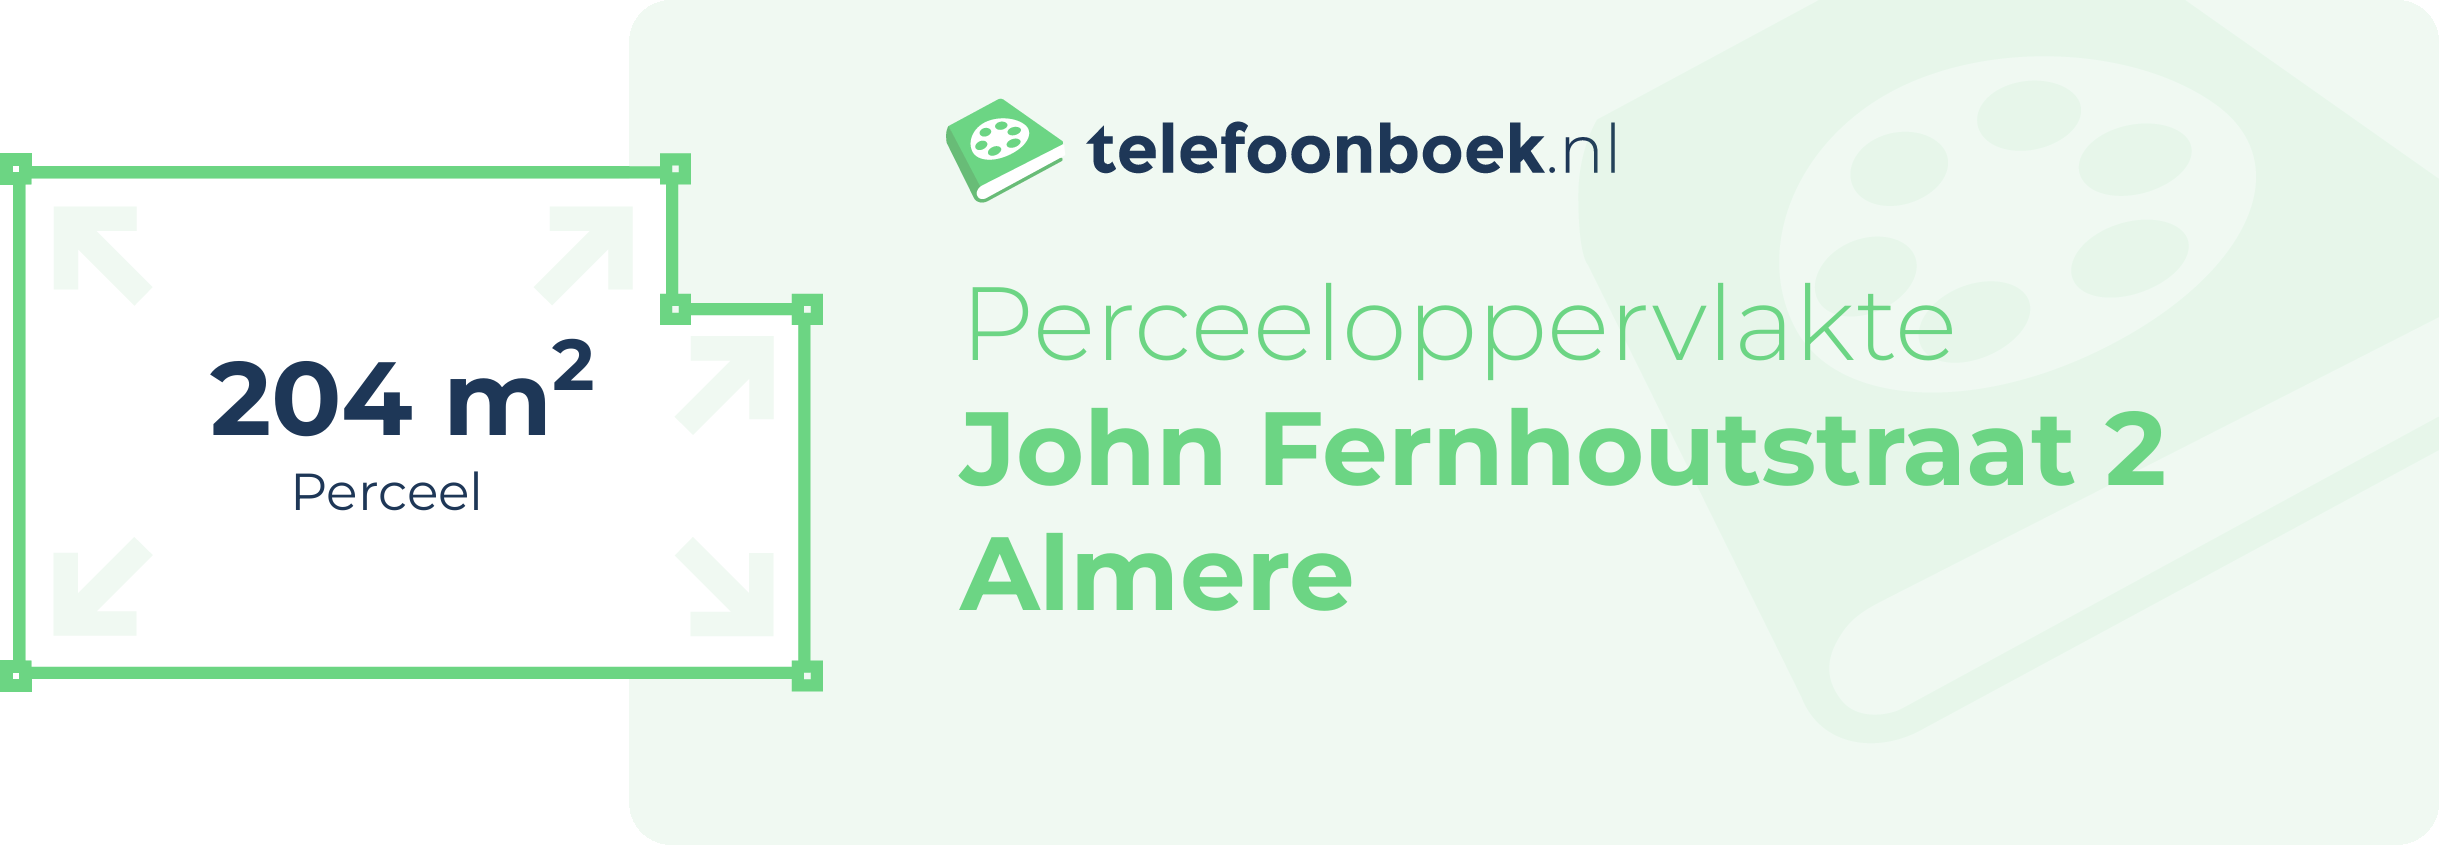 Perceeloppervlakte John Fernhoutstraat 2 Almere